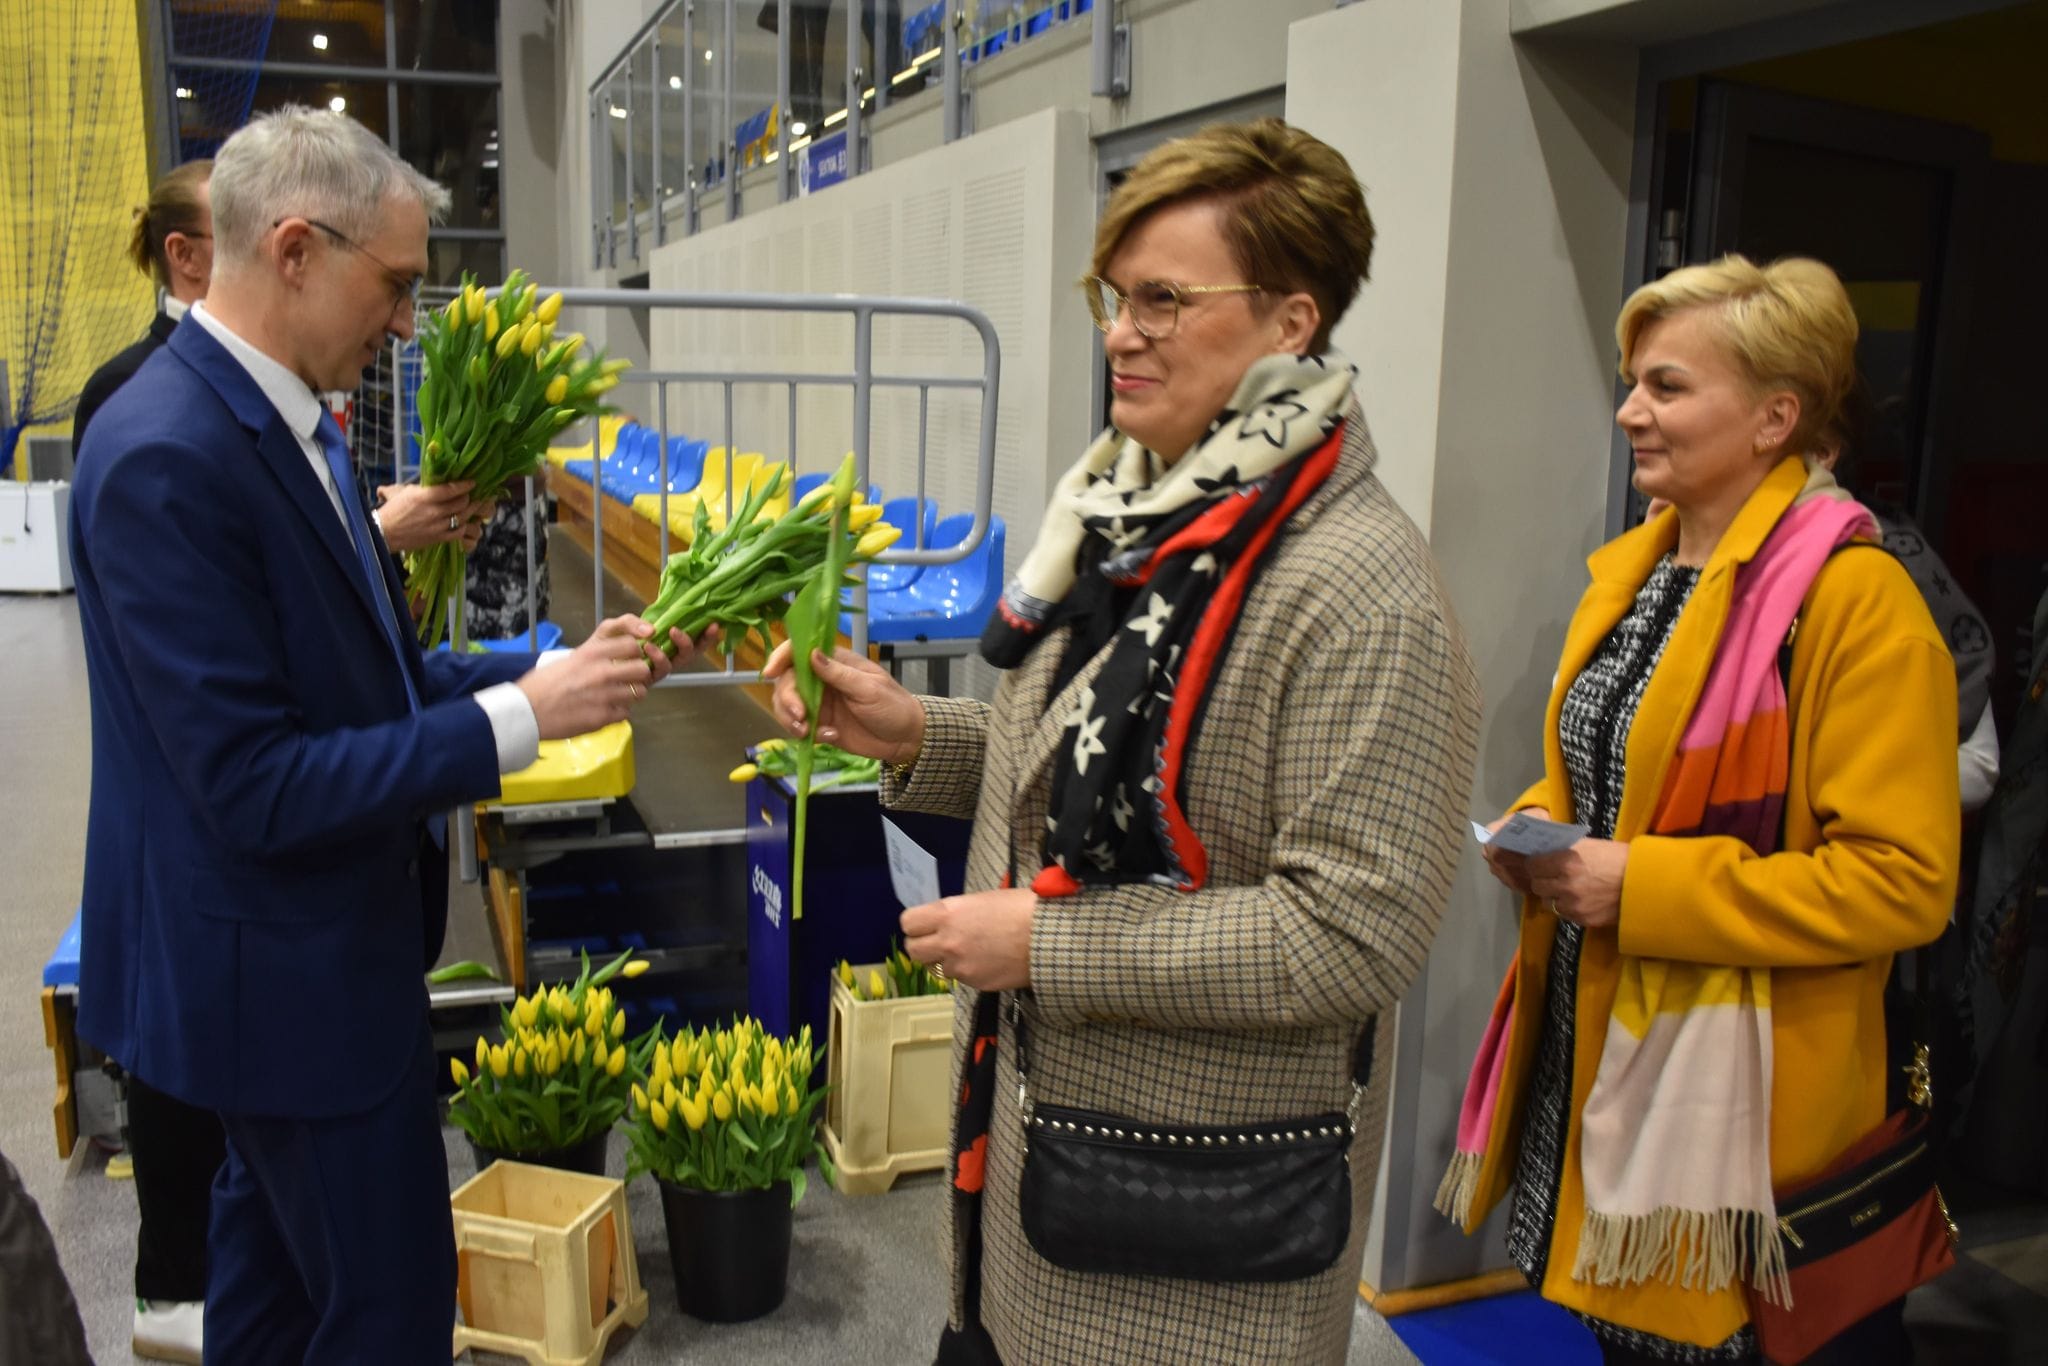 Burmistrz wręczający kwiaty na koncercie z okazji Dnia Kobiet na hali widowiskowo-sportowej w Pleszewie.